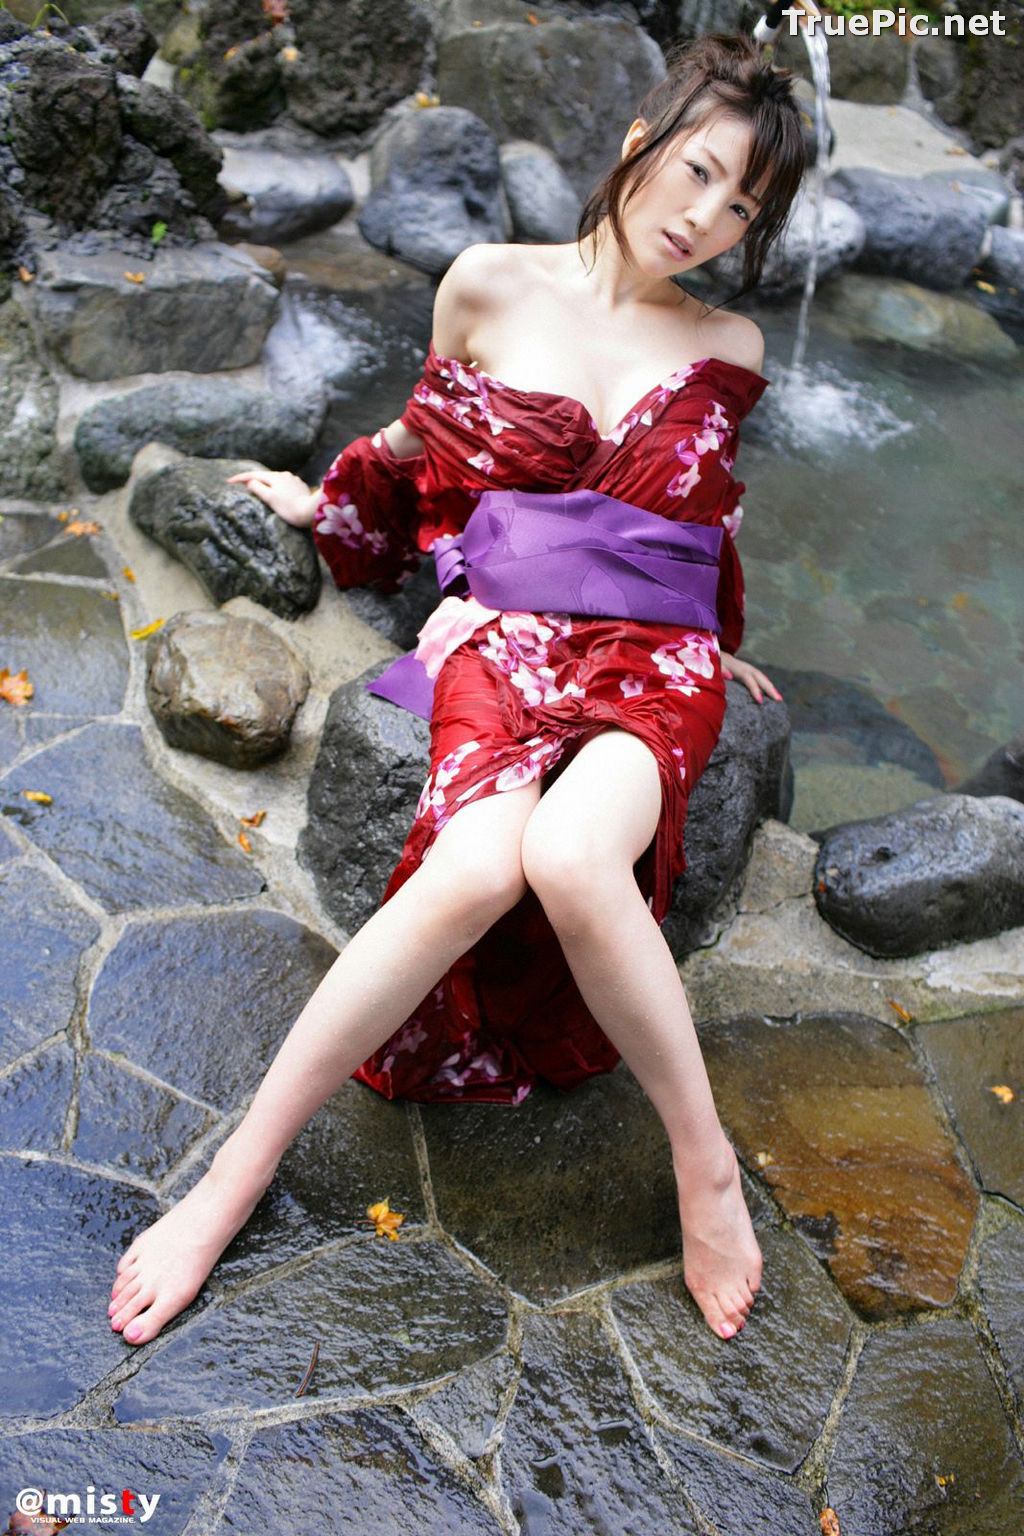 Image Misty No.216 - Japanese Gravure Idol - Yuuri Morishita - TruePic.net - Picture-13